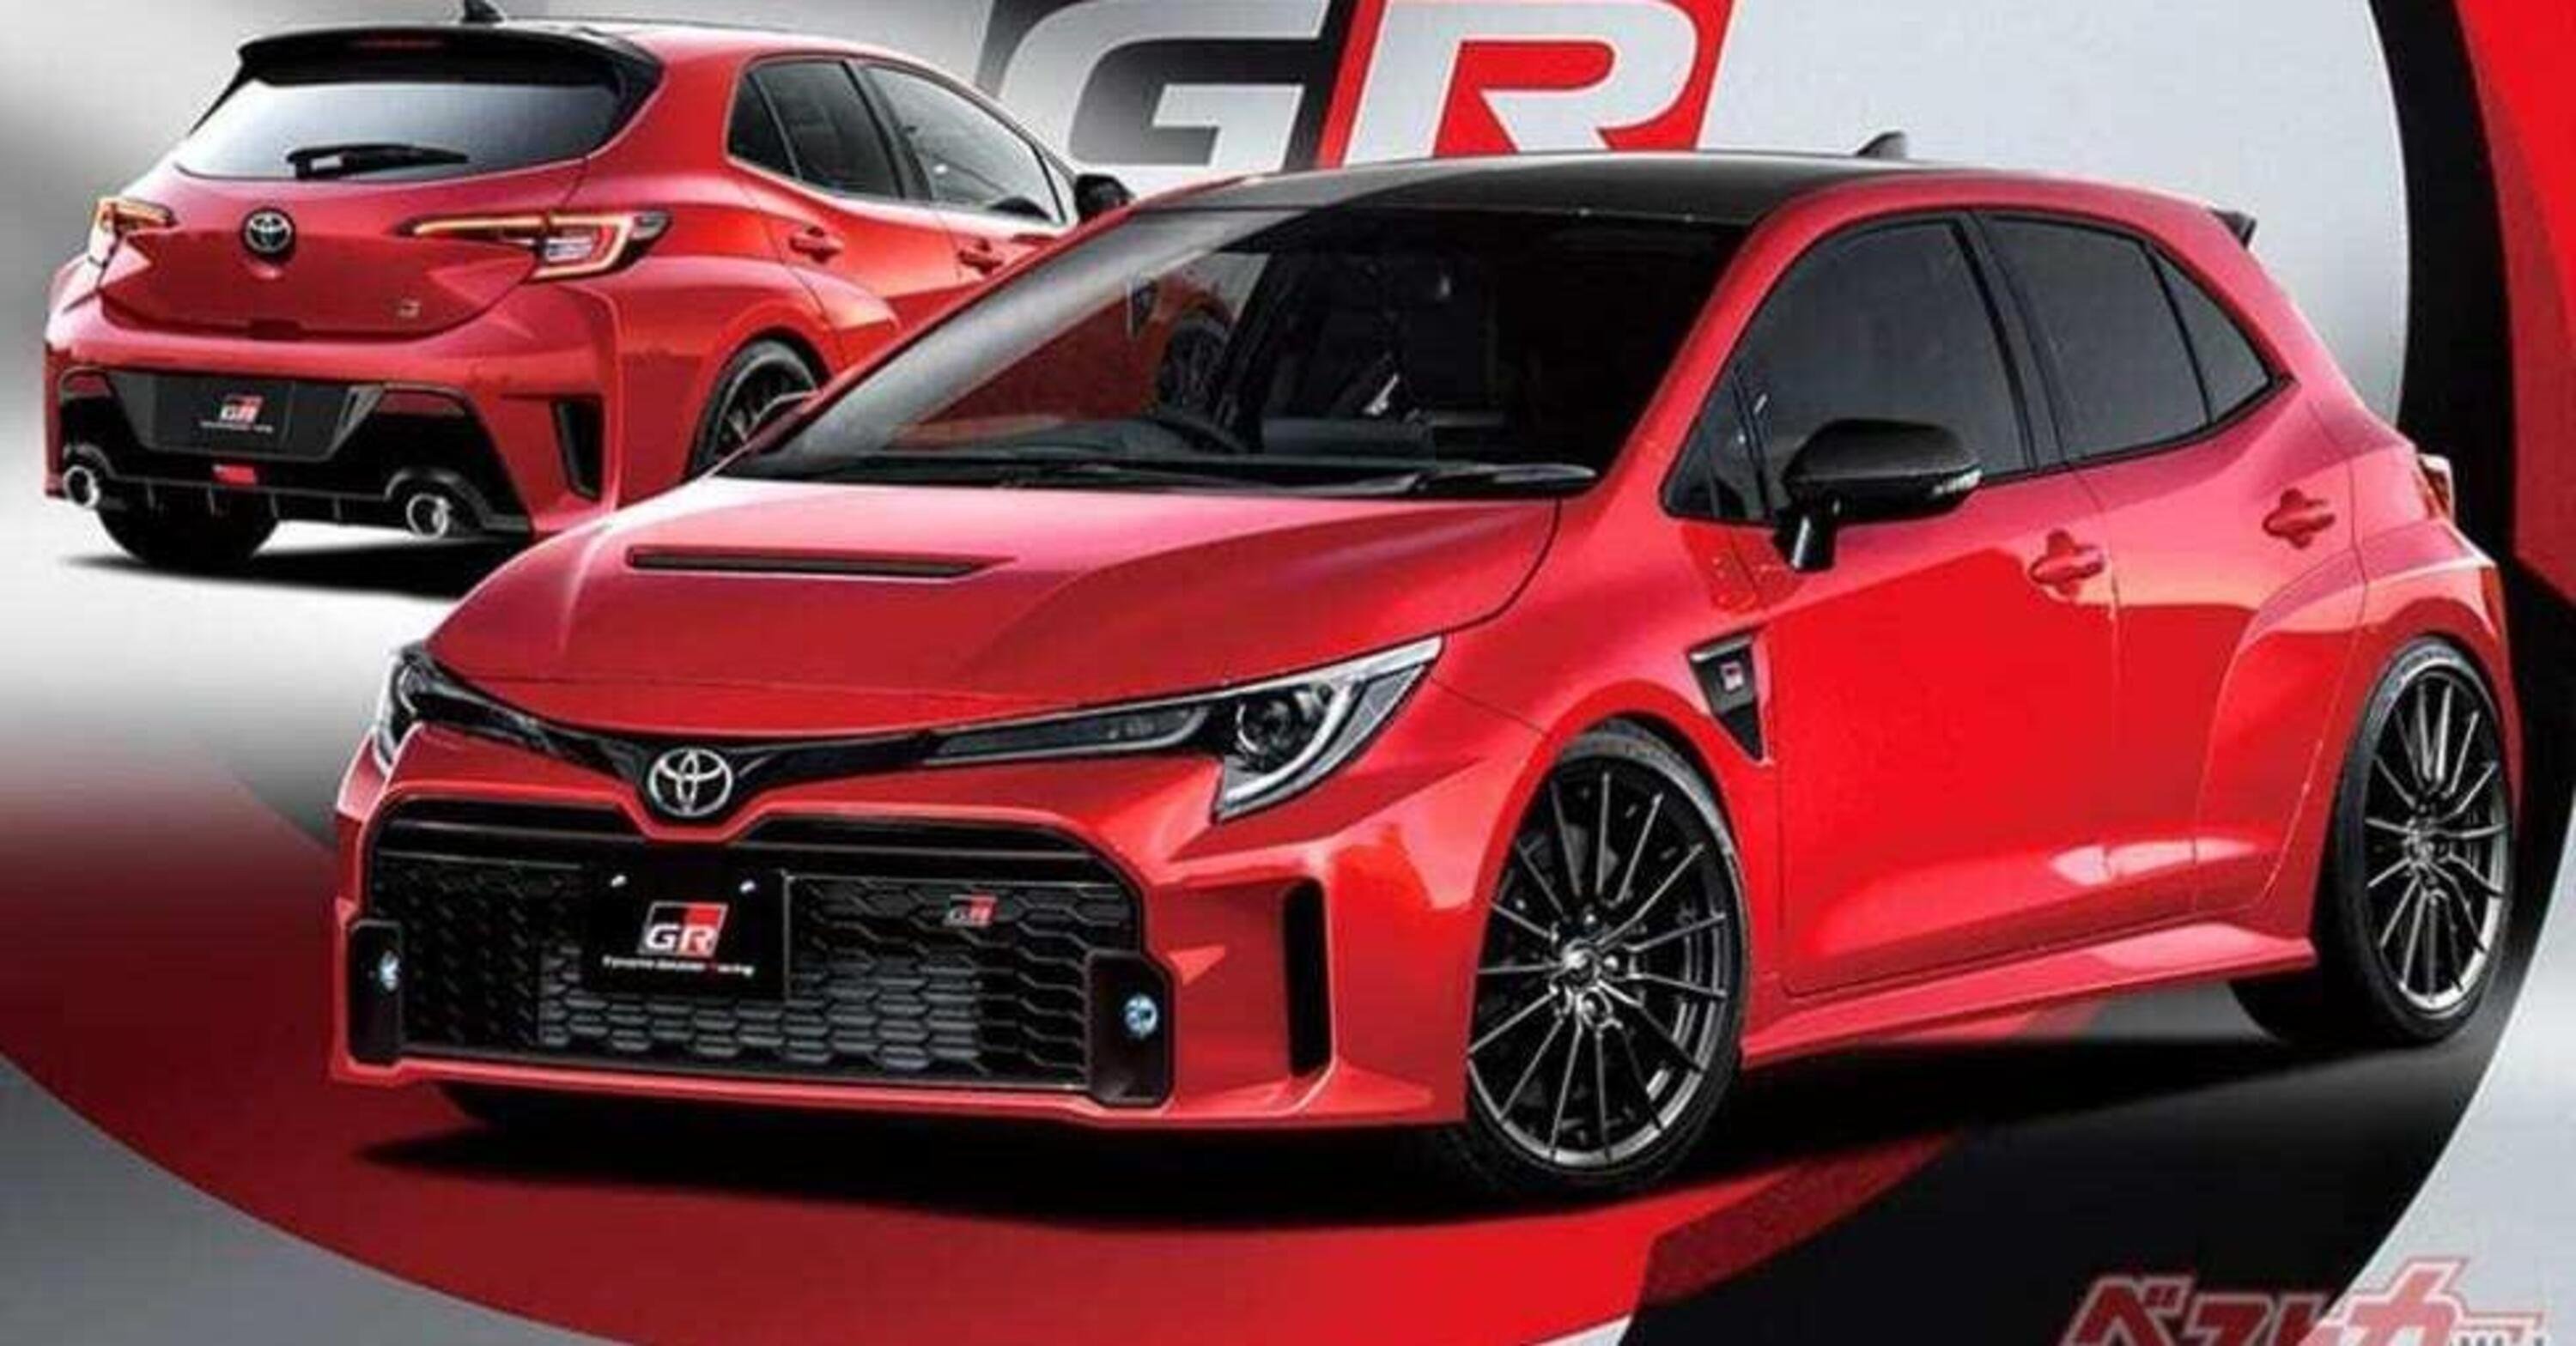 Nuova Toyota GR Corolla, la hot hatch che sfida Volkswagen Golf R, Honda Civic Type-R e tutte le altre